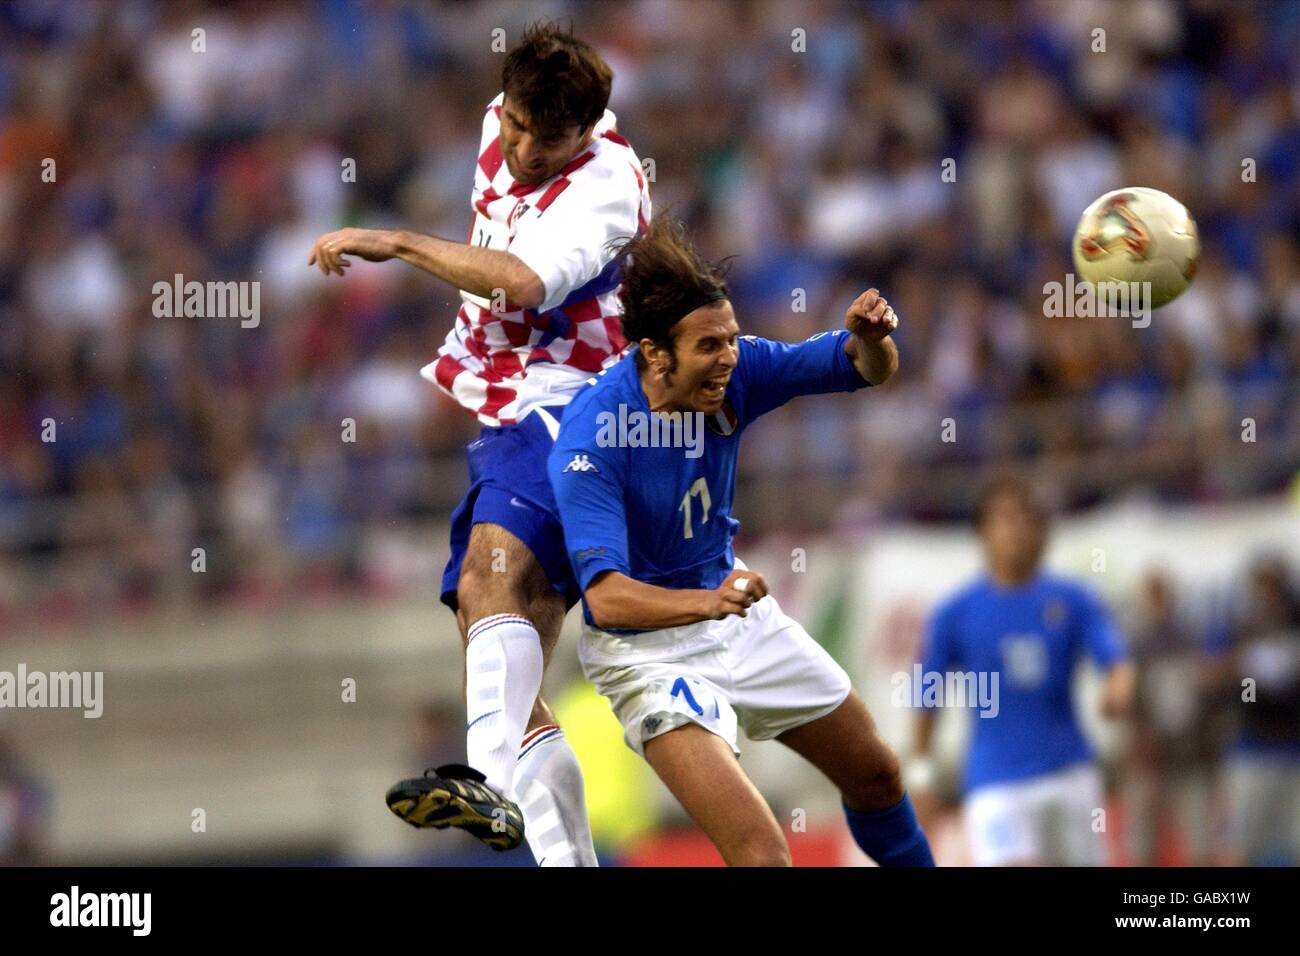 Football - coupe du monde de la FIFA 2002 - Groupe G - Italie / Croatie.Zvonimir Soldo (l) en Croatie et Cristiano Doni en Italie se battent pour le ballon Banque D'Images